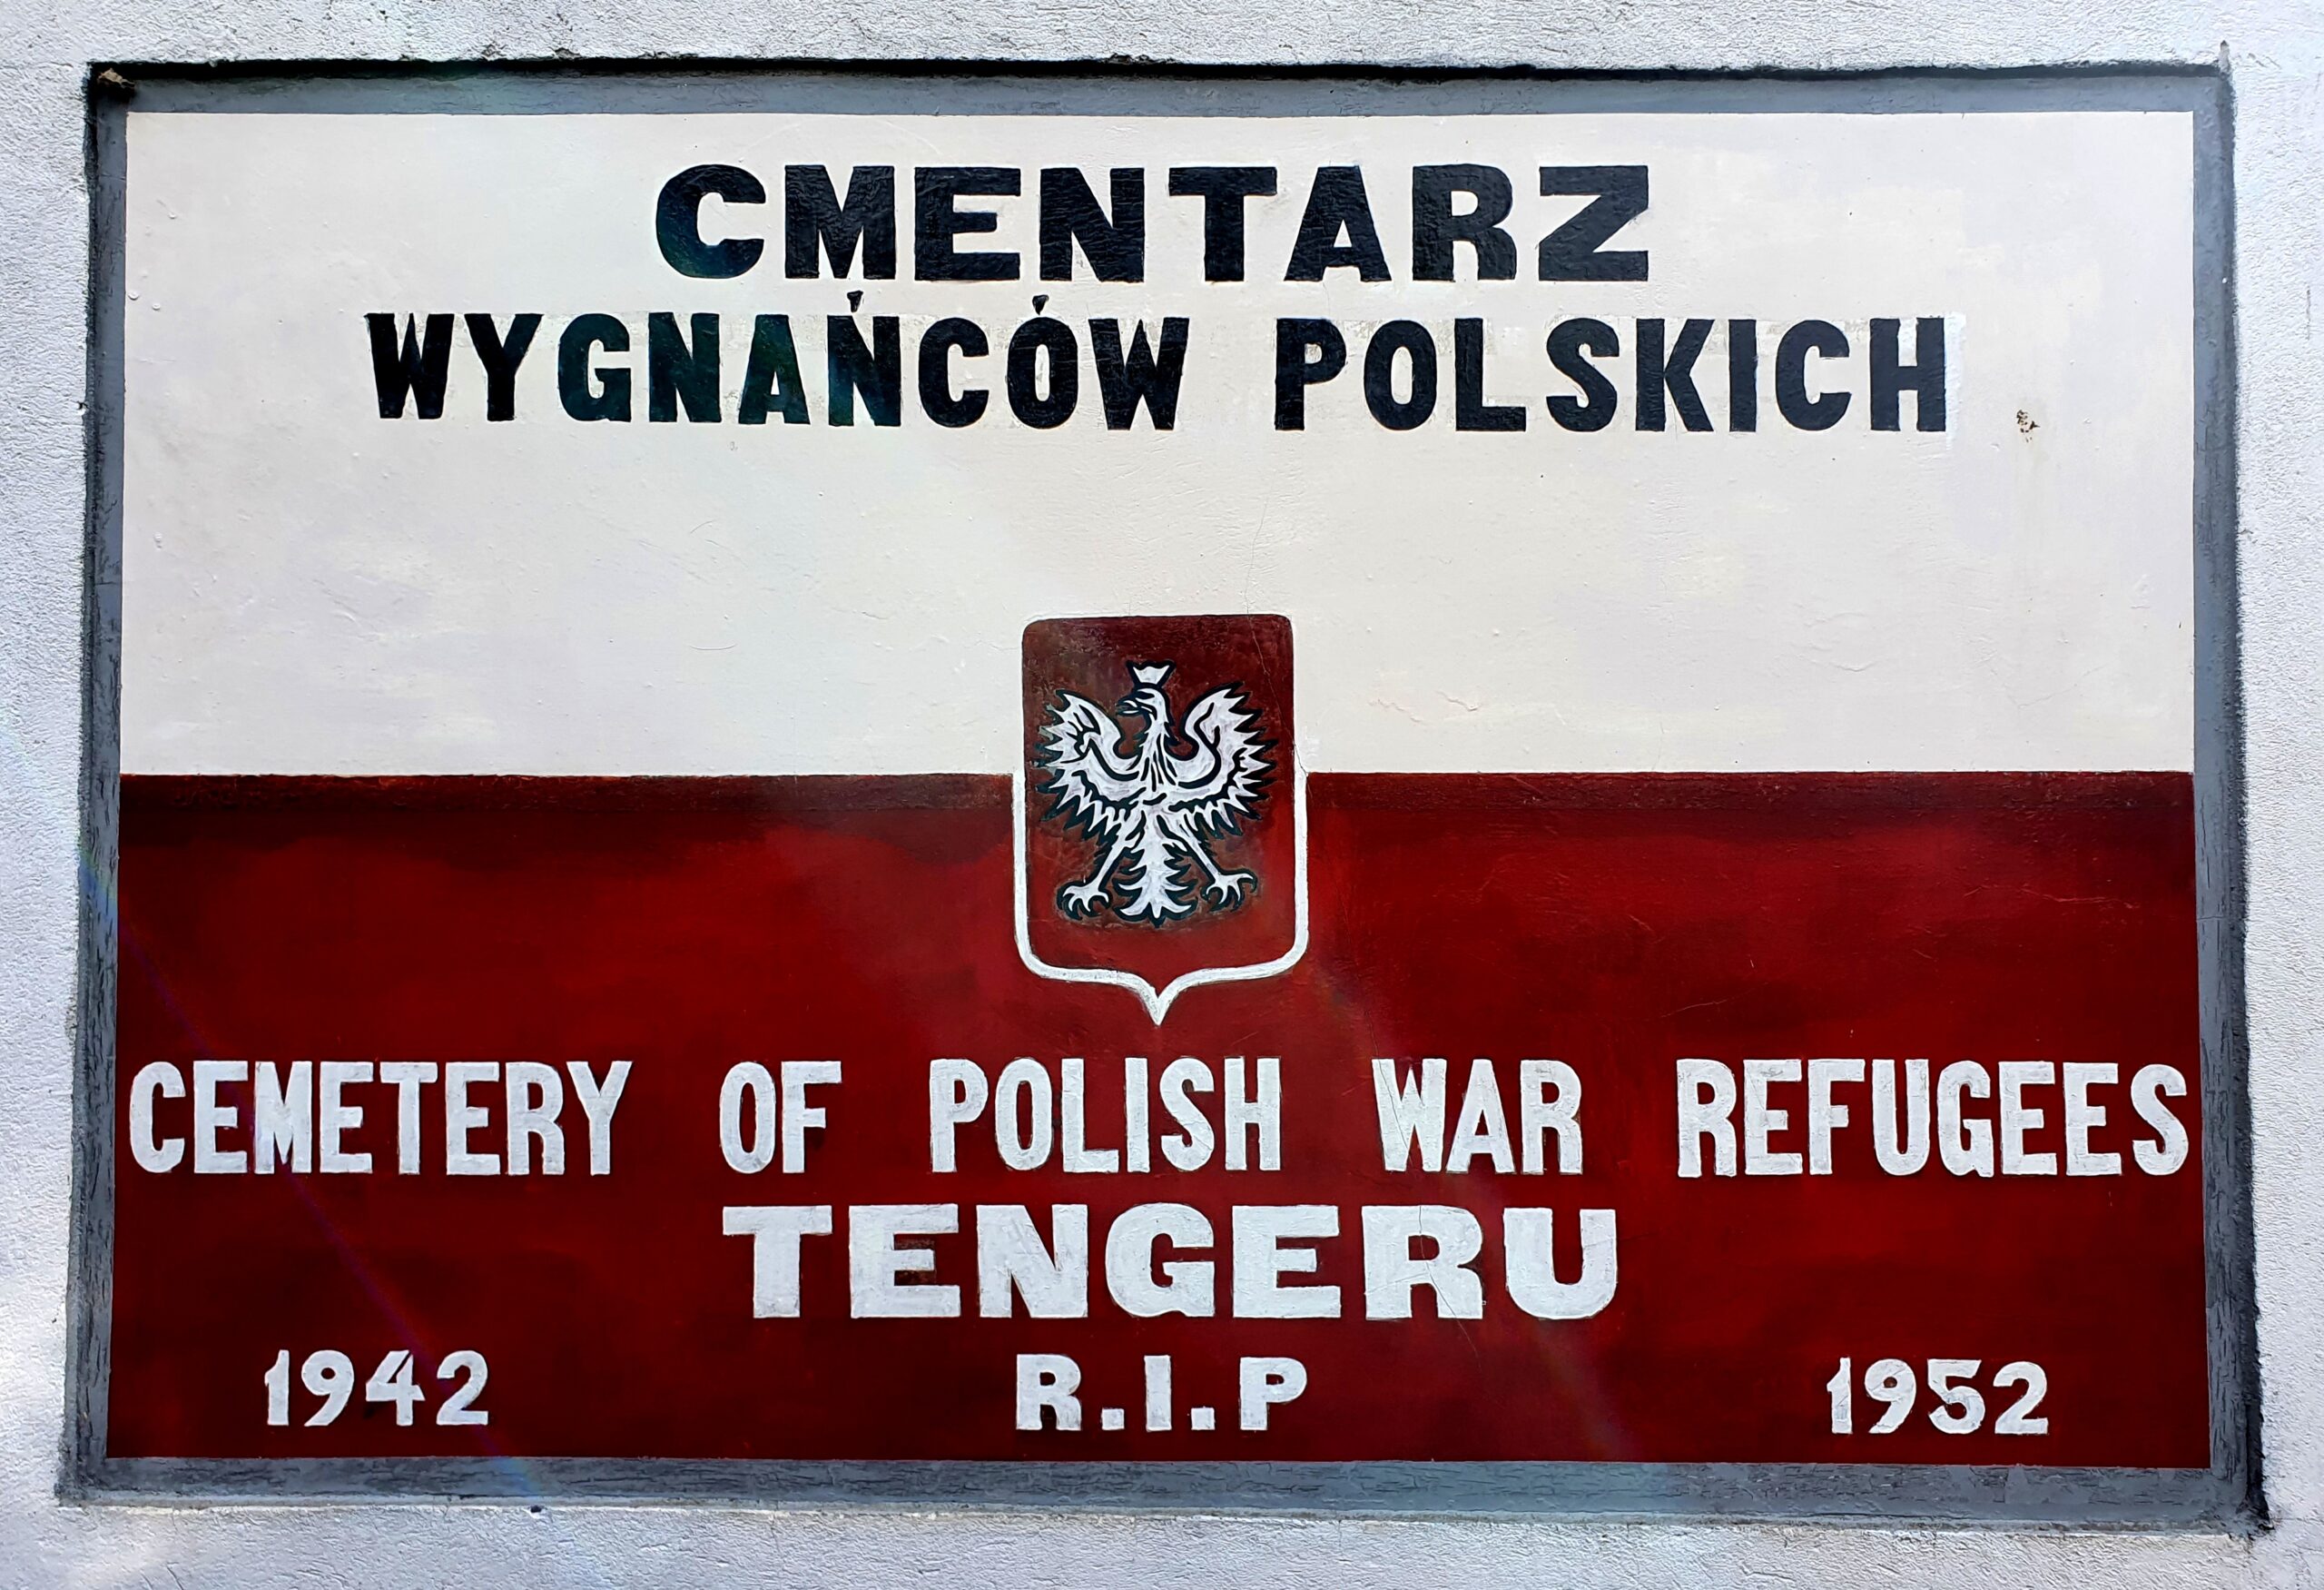 Tengeru - obóż wygnańców polskich